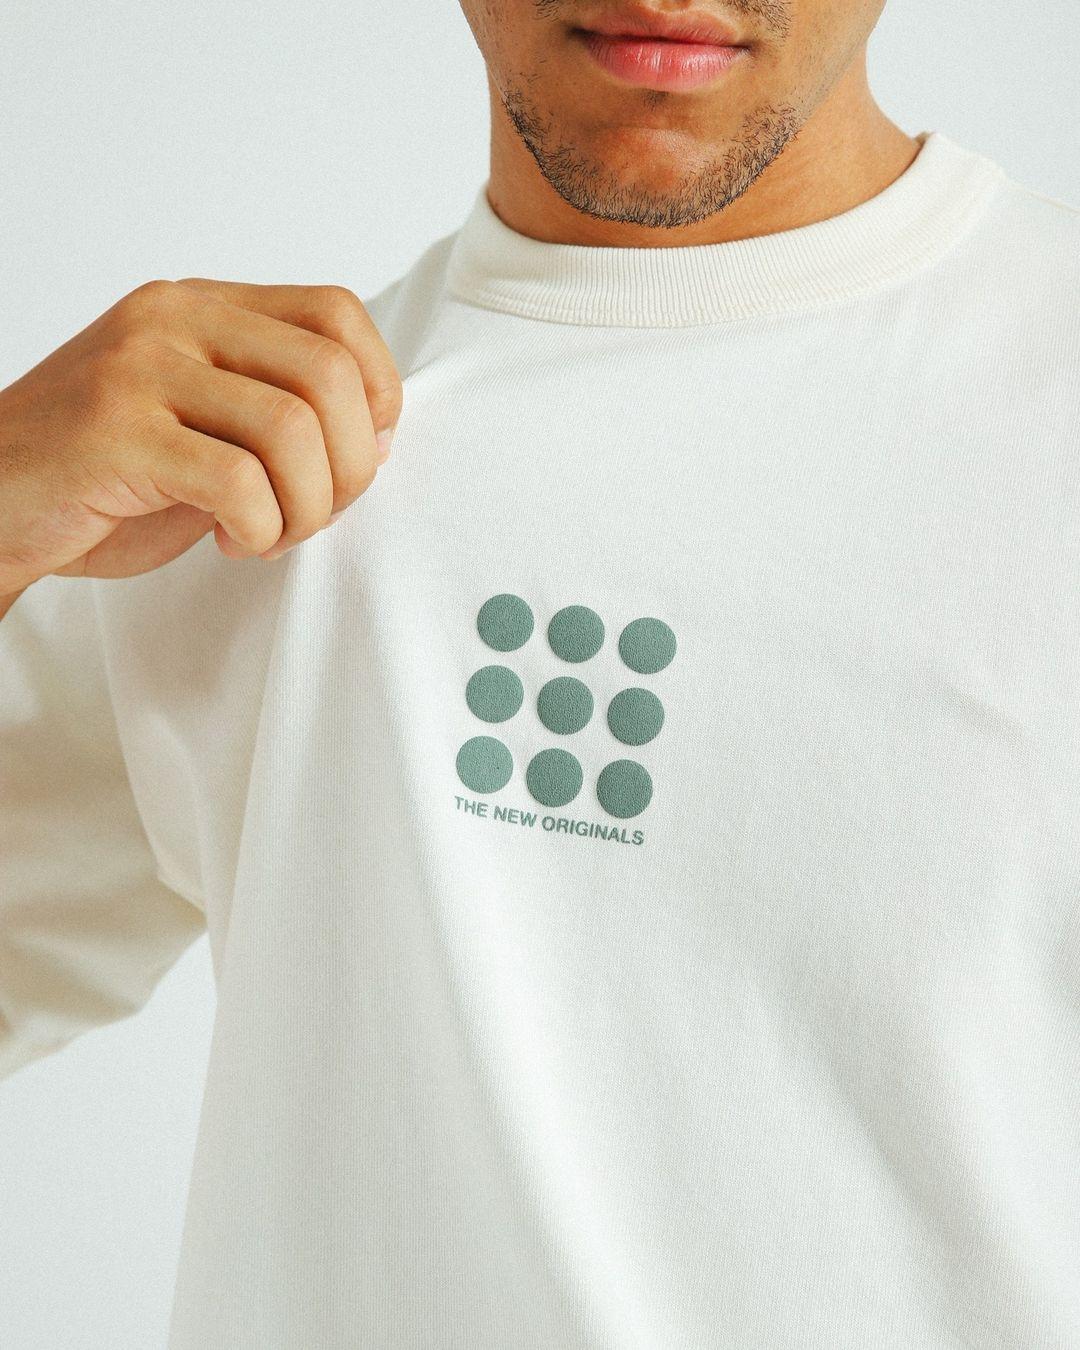 9-Dots T-shirt White Alyssum 1009DTS23.001